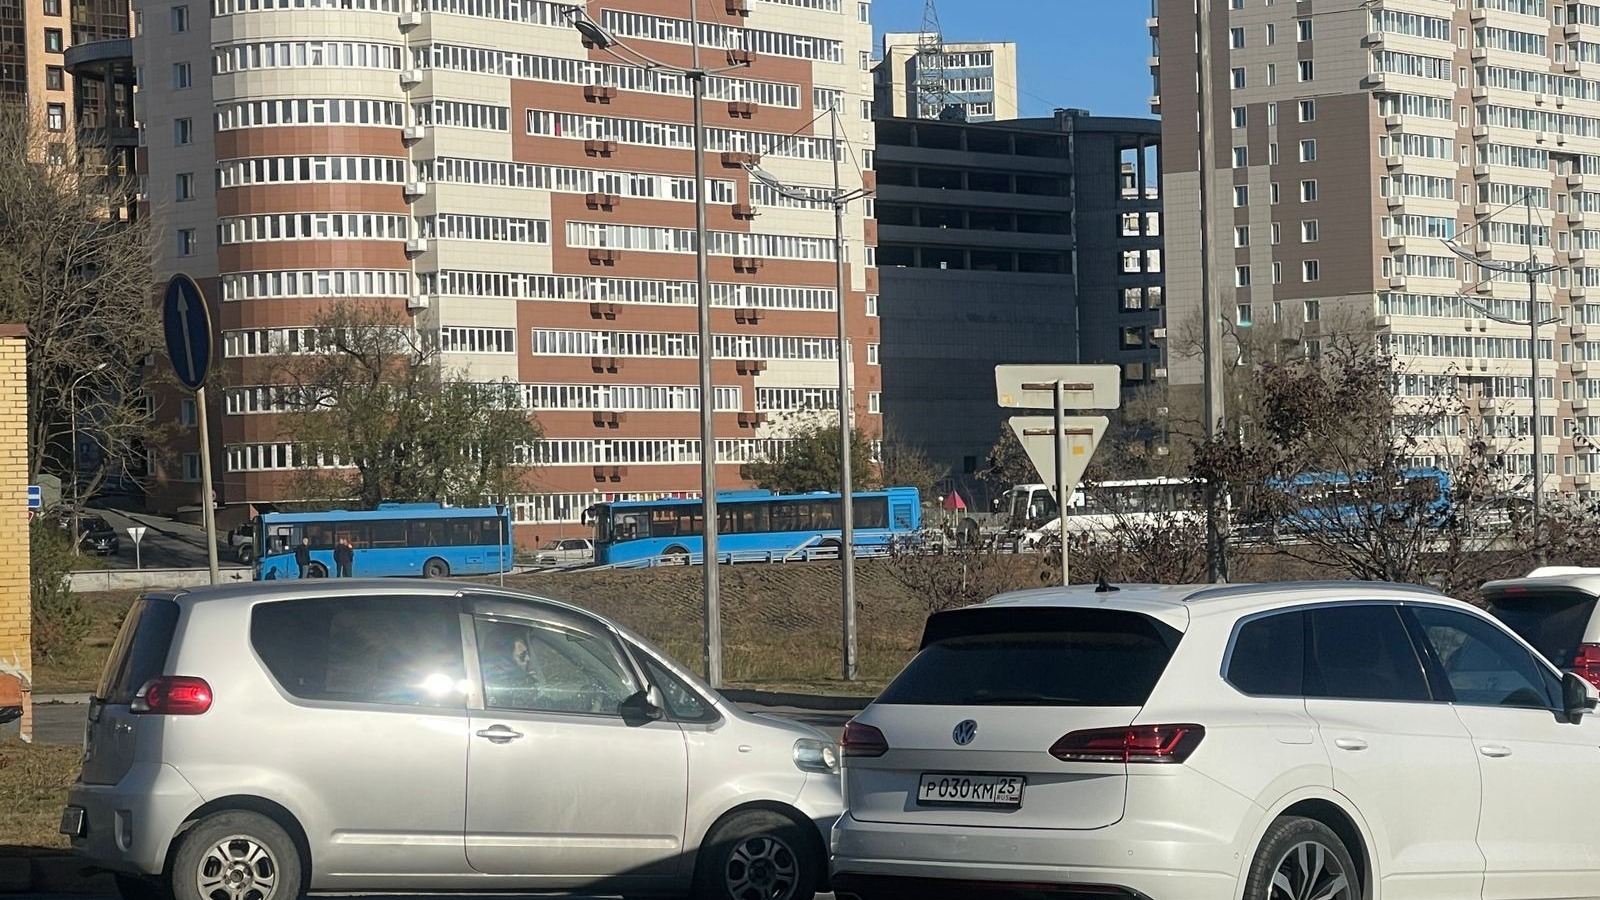 Транспортный коллапс произошёл на одной из улиц во Владивостоке